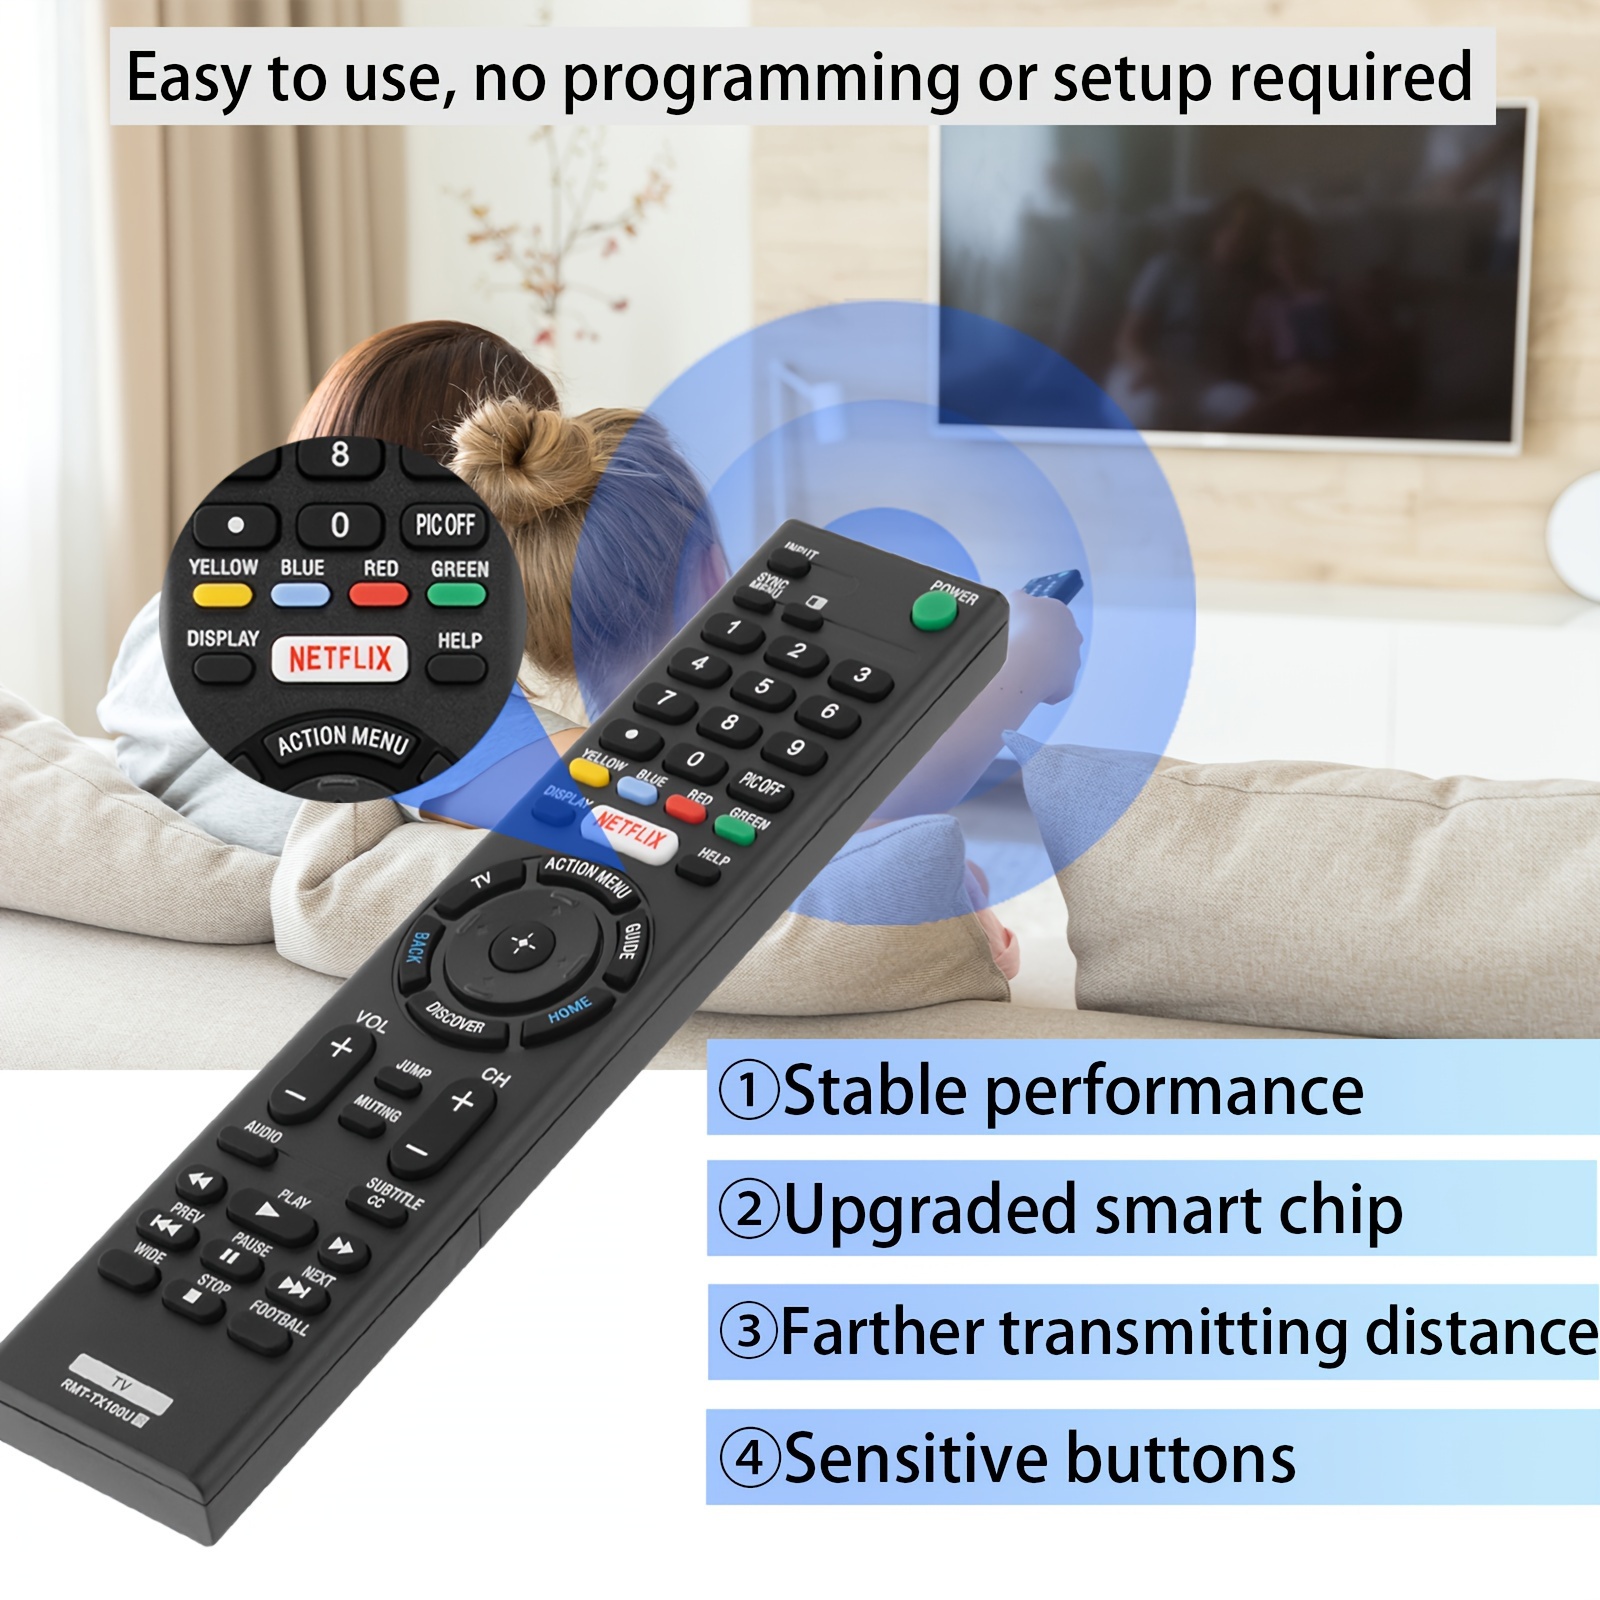 Télécommande universelle de rechange pour TV Sony avec bouton